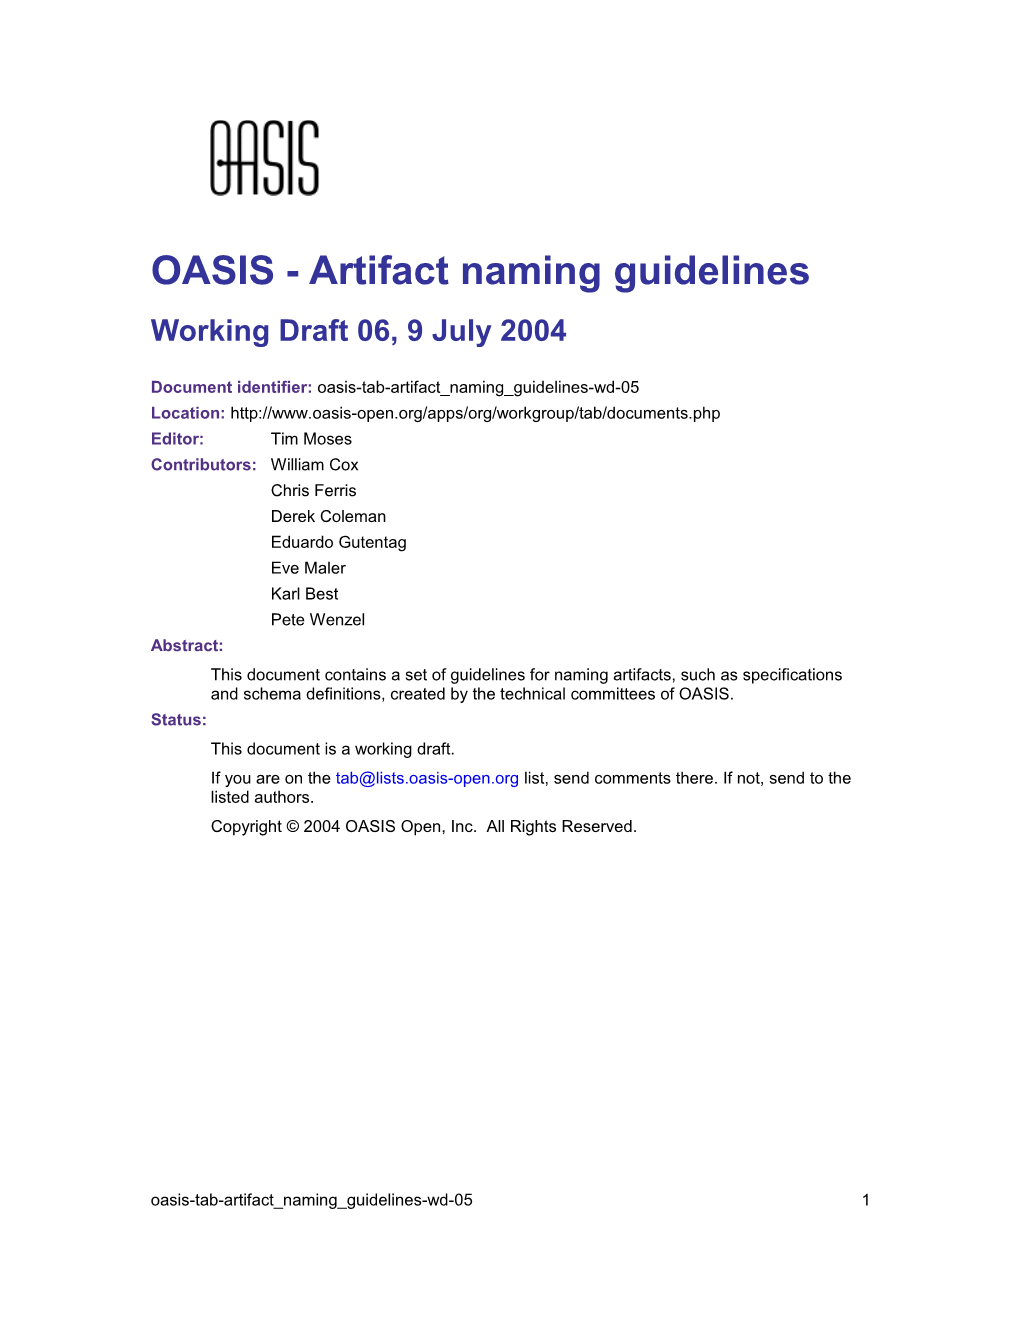 OASIS - Artifact Naming Guidelines s1